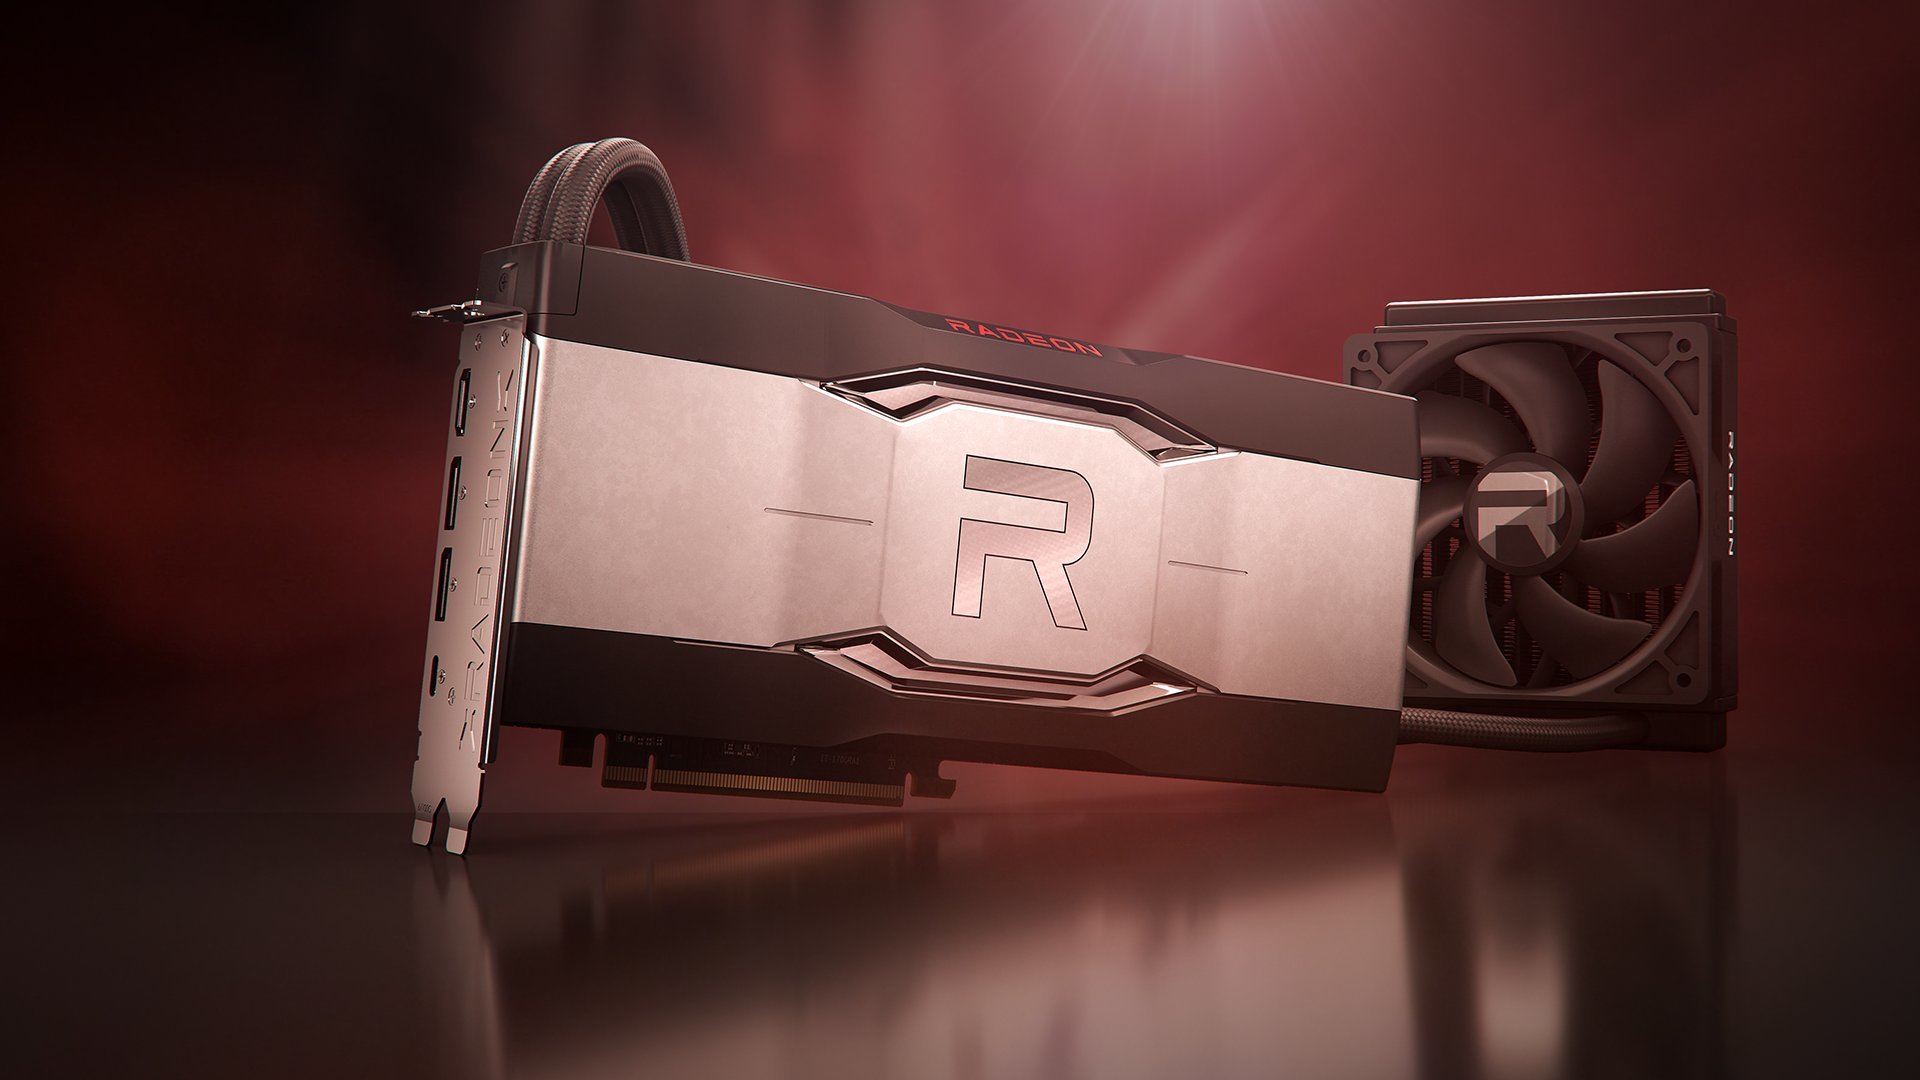 GPU Radeon RX 6900 XT Liquid Cooled: Siêu phẩm tản nhiệt bằng chất lỏng